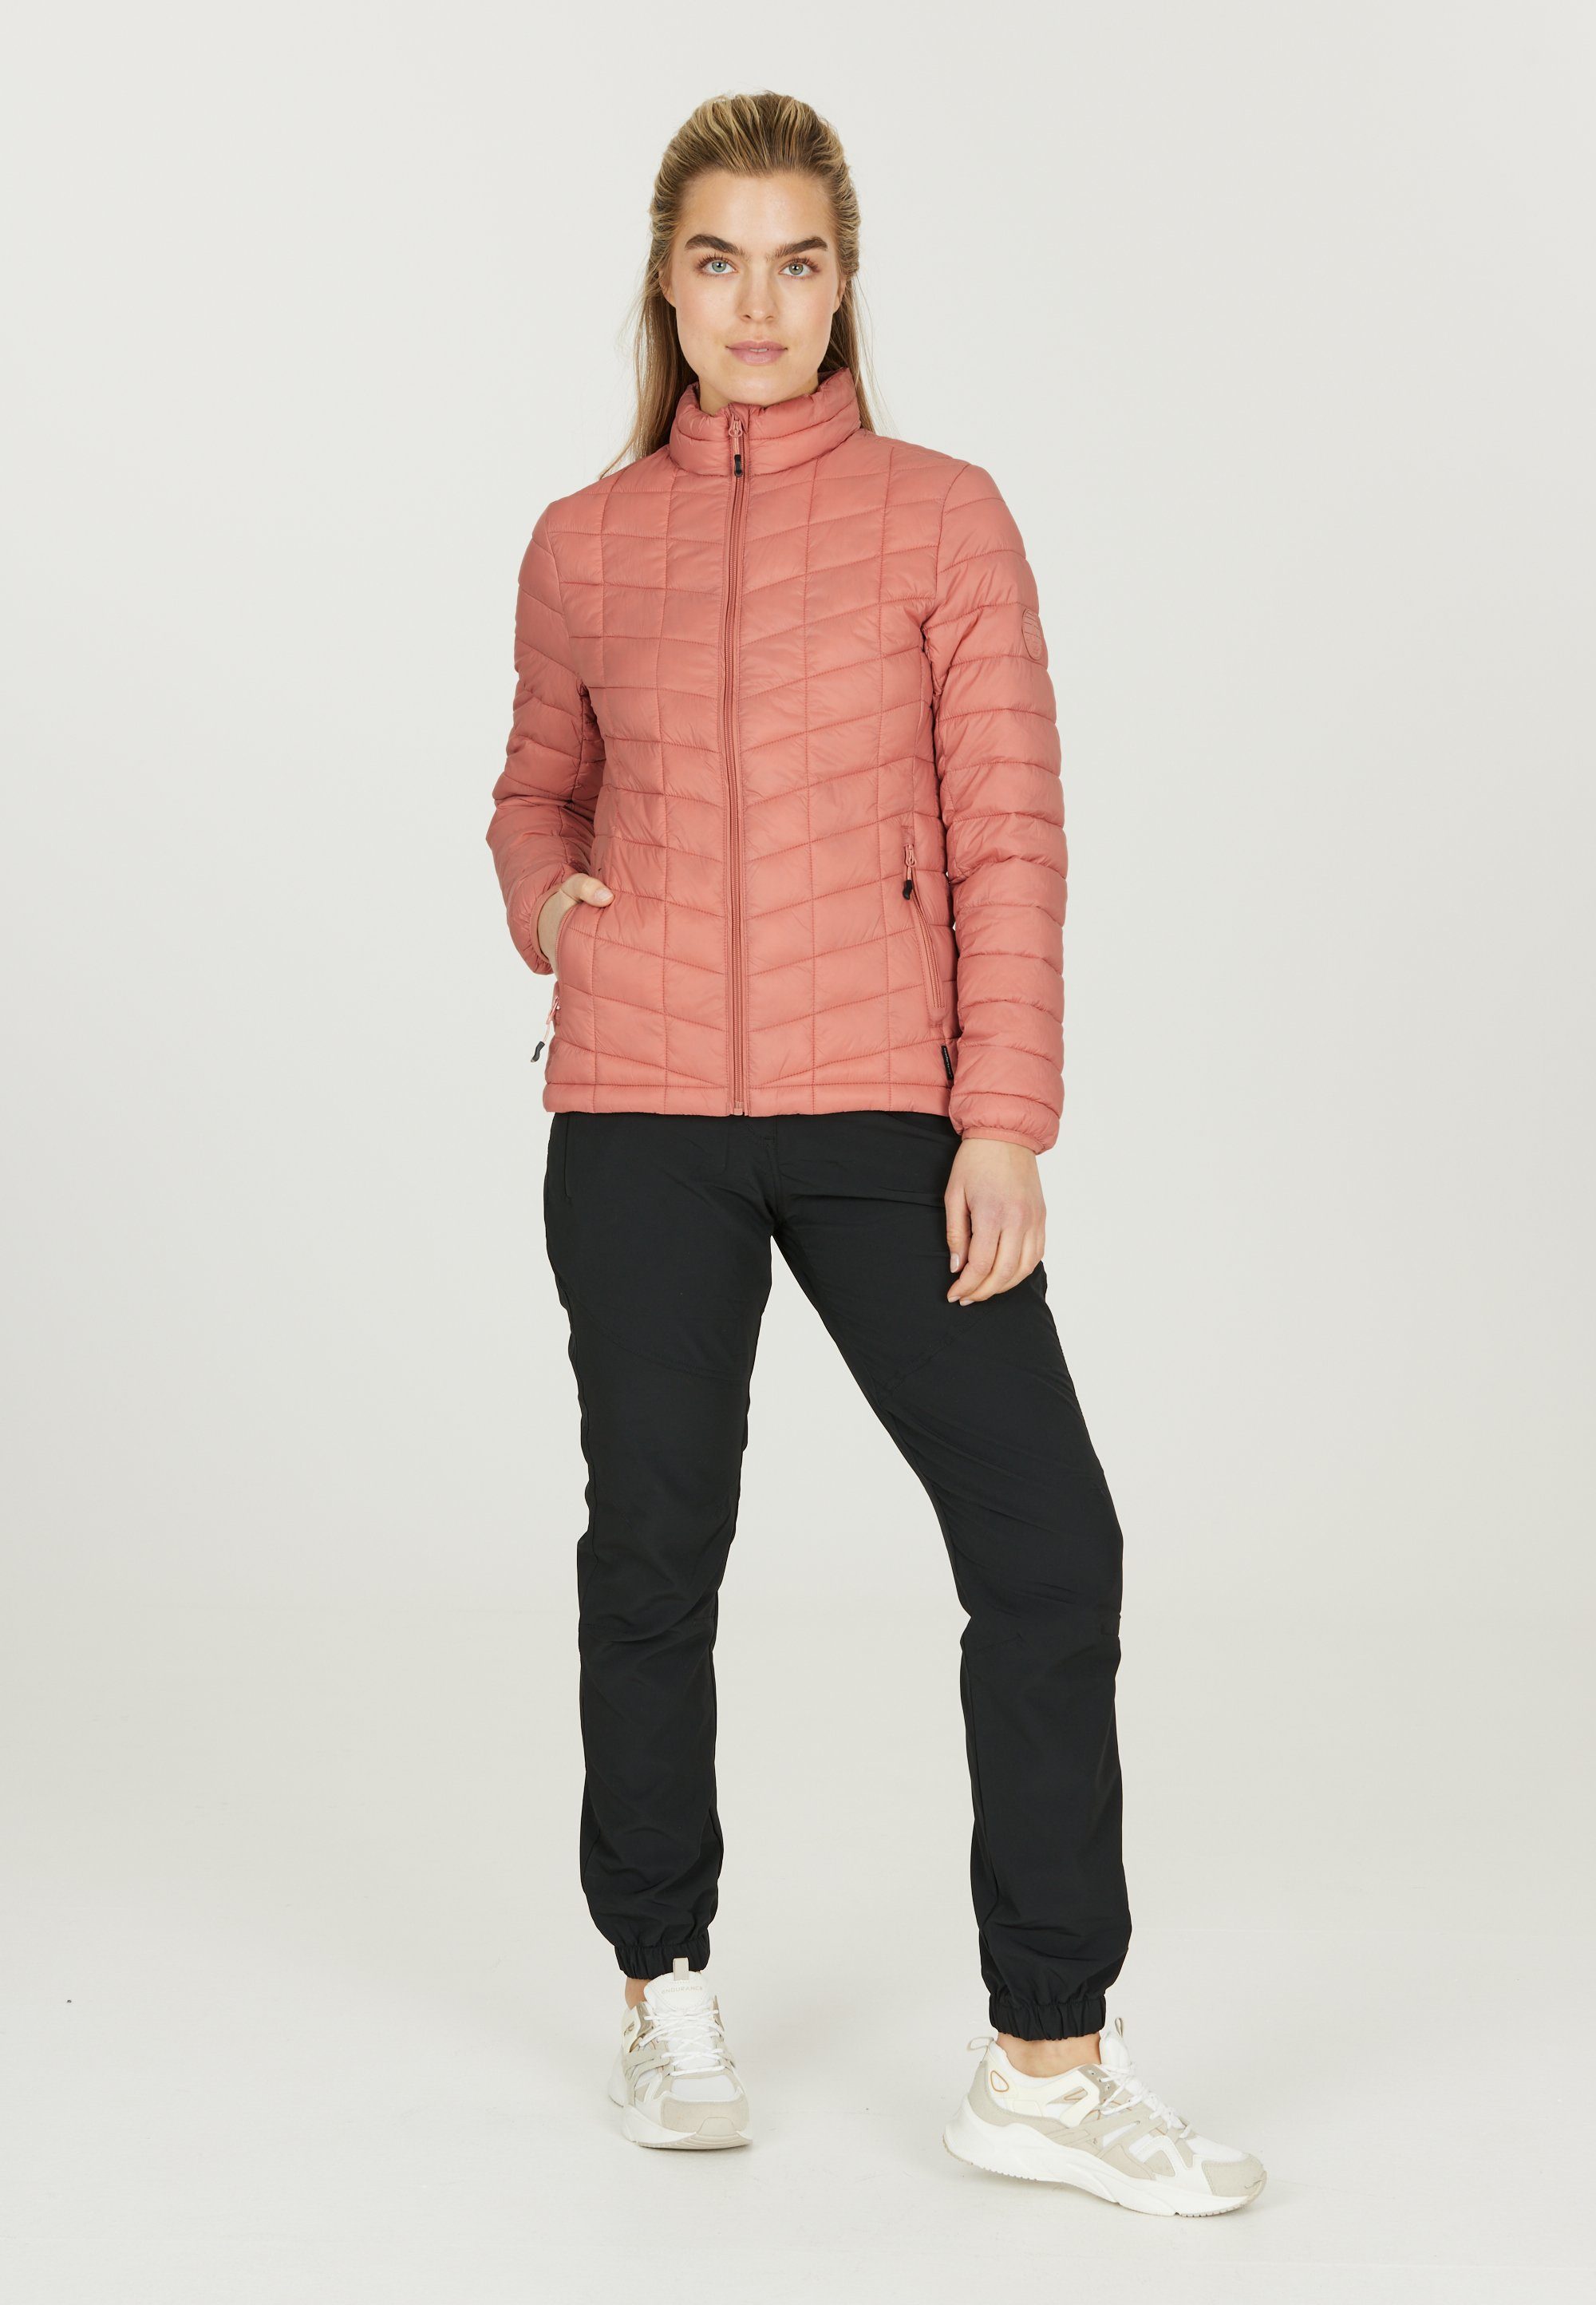 Kate Outdoorjacke Stepp-Design in rosa WHISTLER tollem